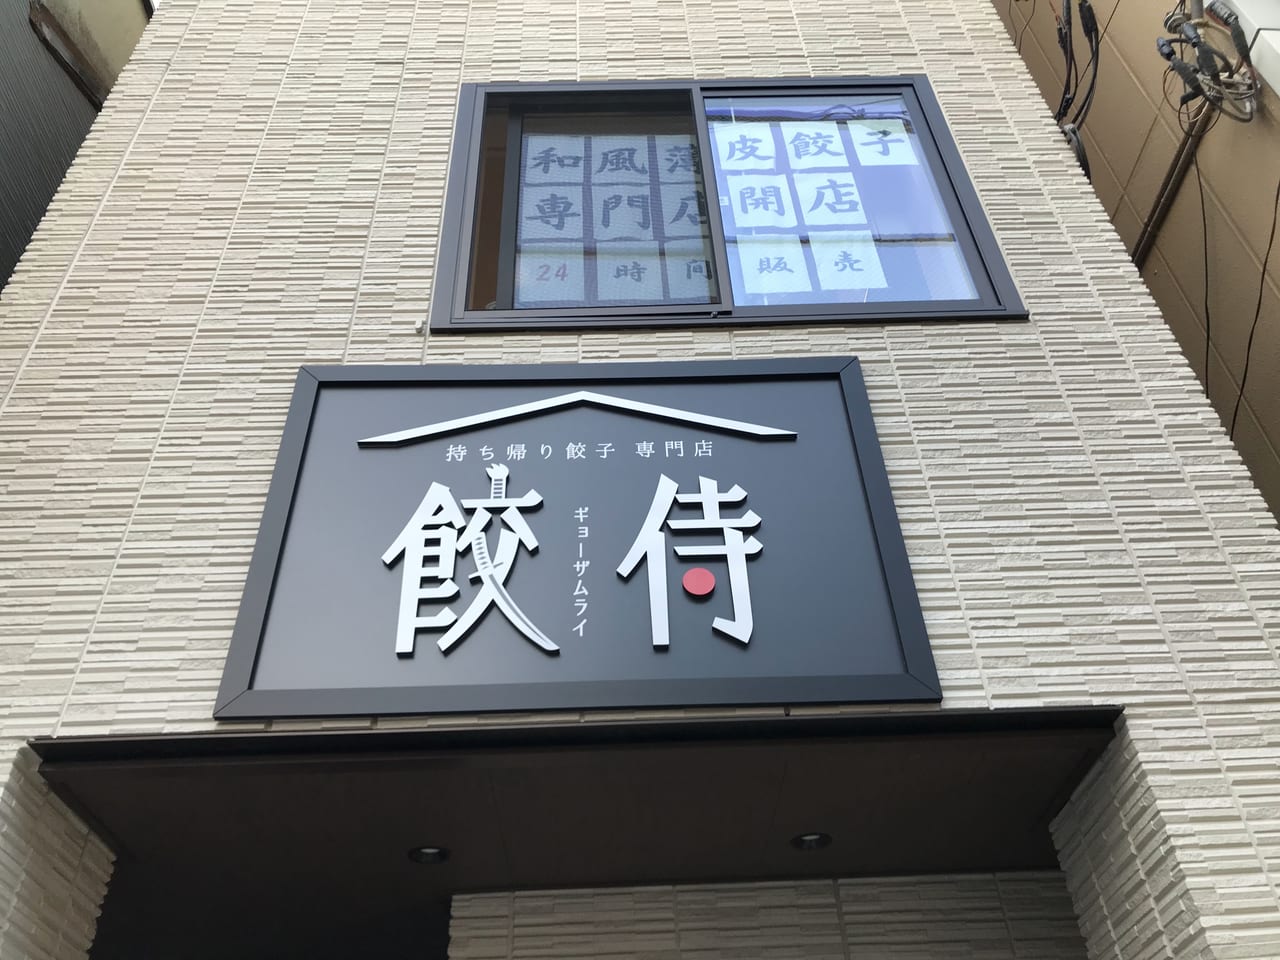 世田谷区千歳船橋に冷凍餃子の自販機を設置している「餃侍ギョウザムライ」家族経営でほっこりするお店です。